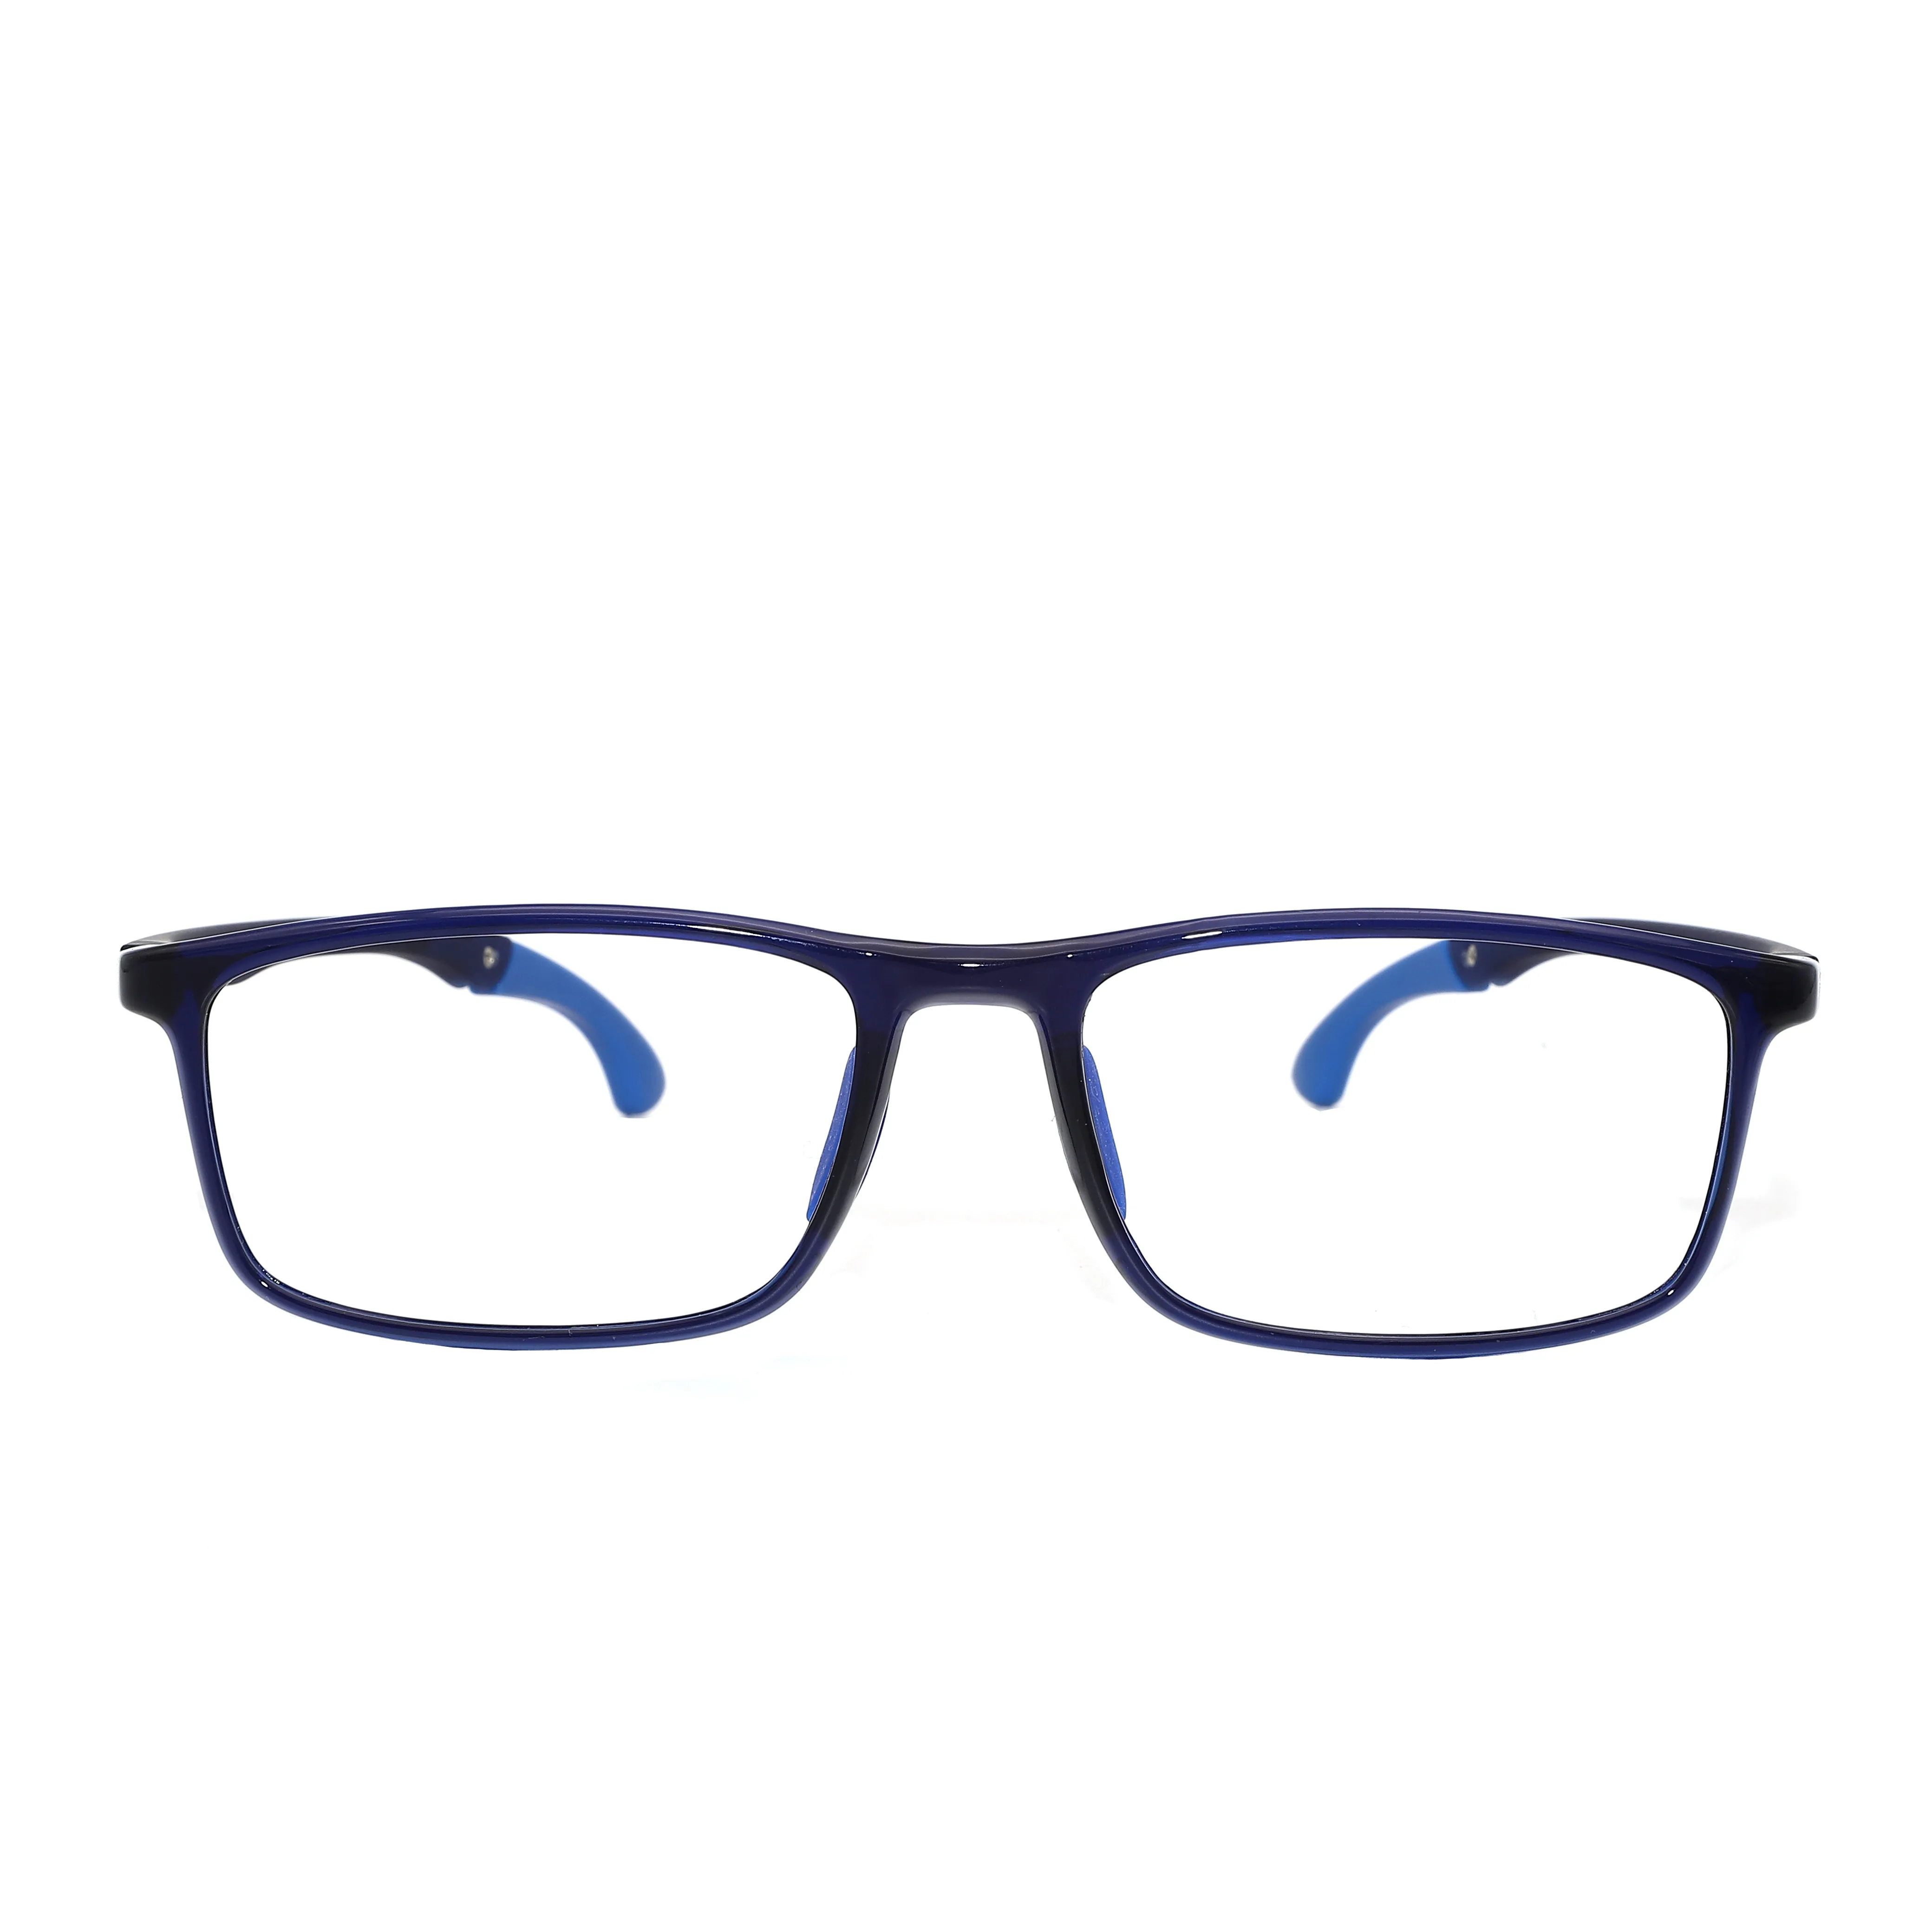 Manufactory Wholesale flexible glasses frames kids children eyeglasses frame children tr90 optical eyeglasses frame